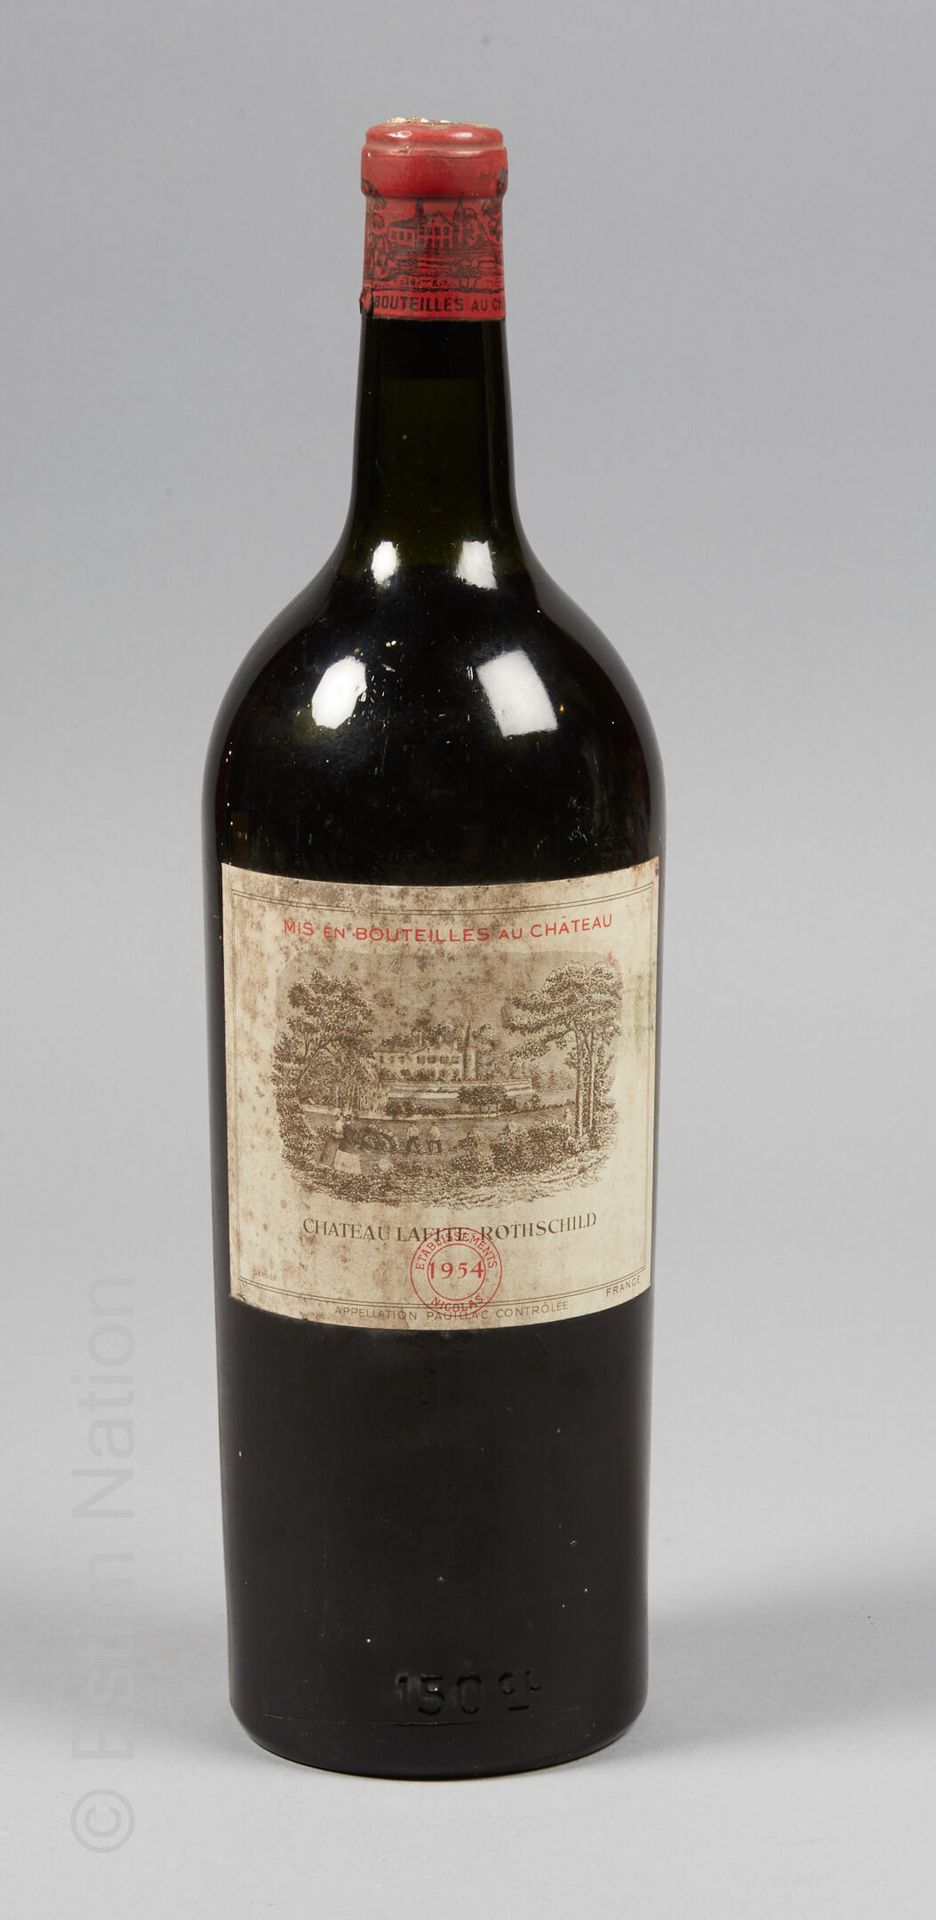 Magnum Château Lafite Rothschild 拉菲古堡大酒杯

Pauillac控制下的法定产区

NICOLAS 1954公寓

(低位颈&hellip;